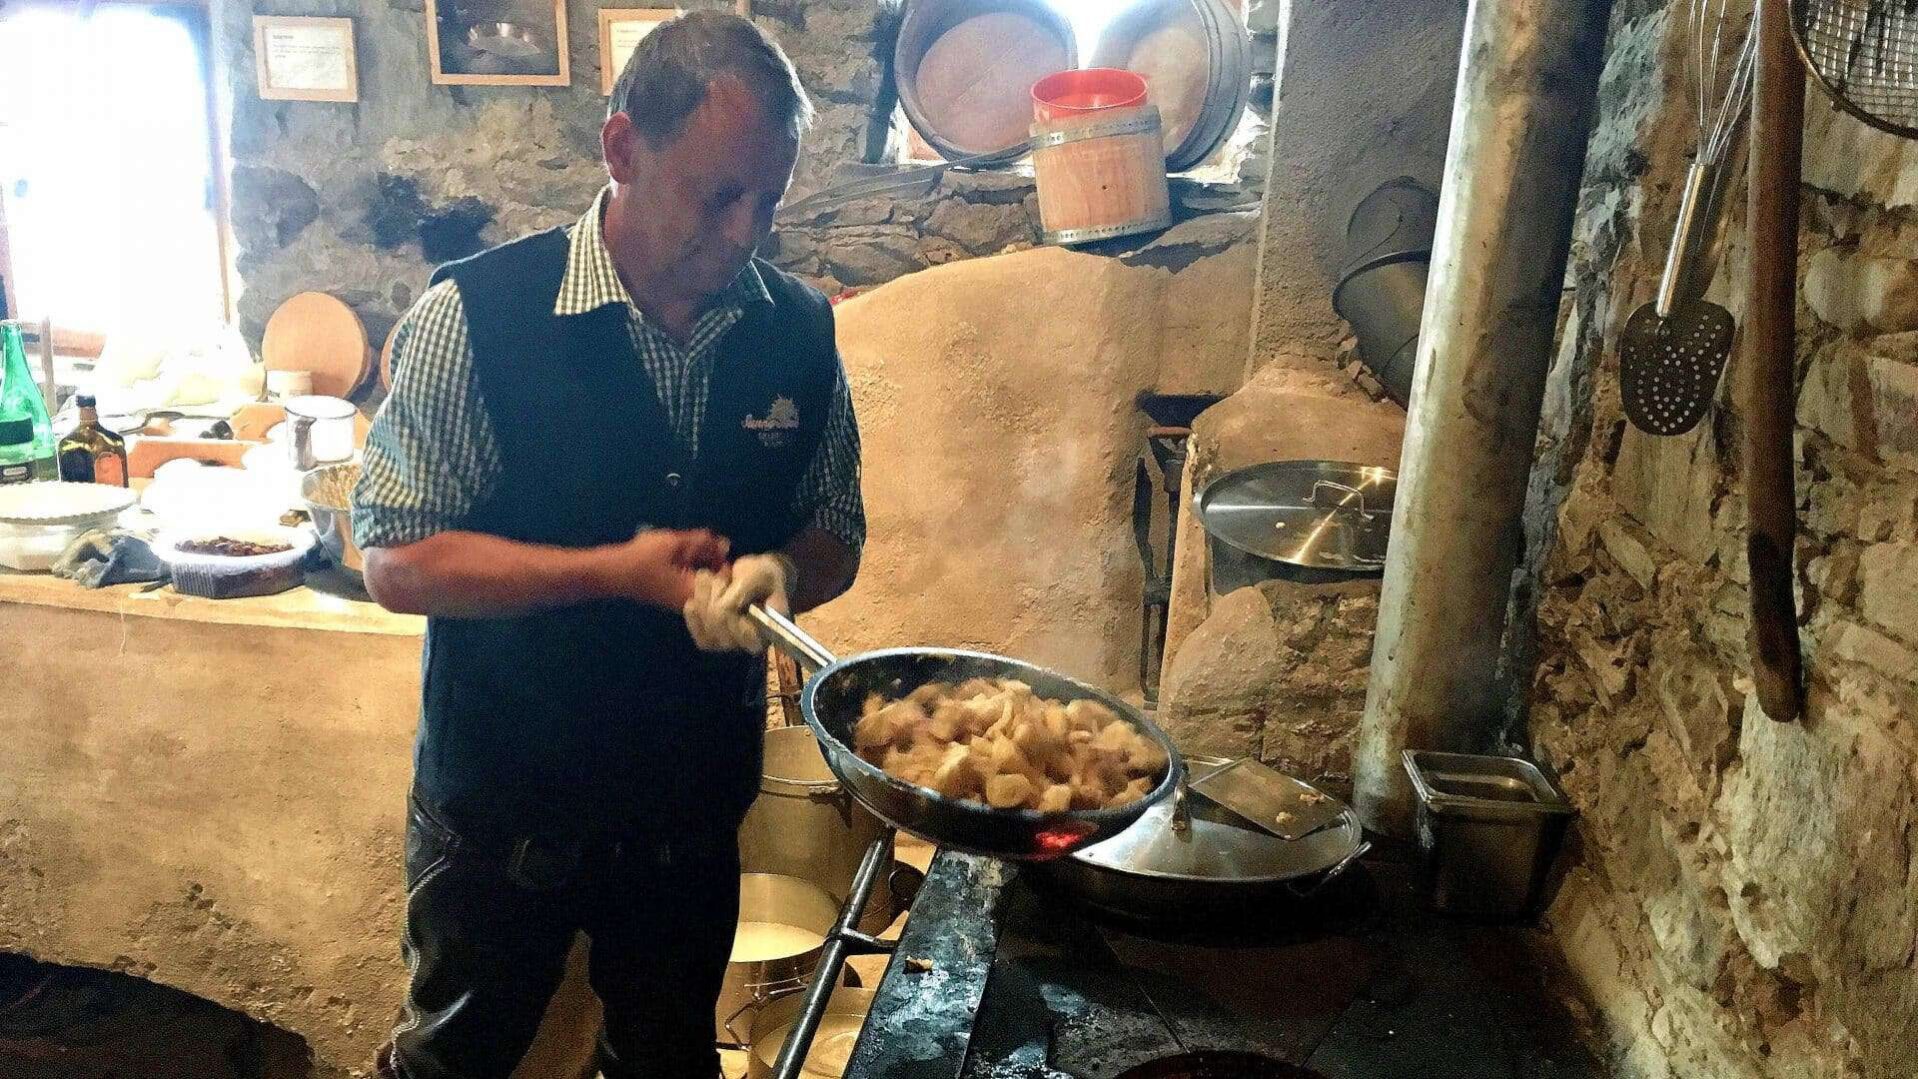 Een man, gekleed in een traditioneel gilet met een geruit overhemd, is geconcentreerd aan het koken in een authentieke, rustieke keuken in Ischgl, Oostenrijk. Hij hanteert een grote koekenpan boven een open vuur, waarin stukjes vlees sudderen en stomen. De keuken is ingericht met stenen muren en houten keukengerei hangt binnen handbereik, wat bijdraagt aan de sfeer van een traditionele Oostenrijkse kookworkshop.